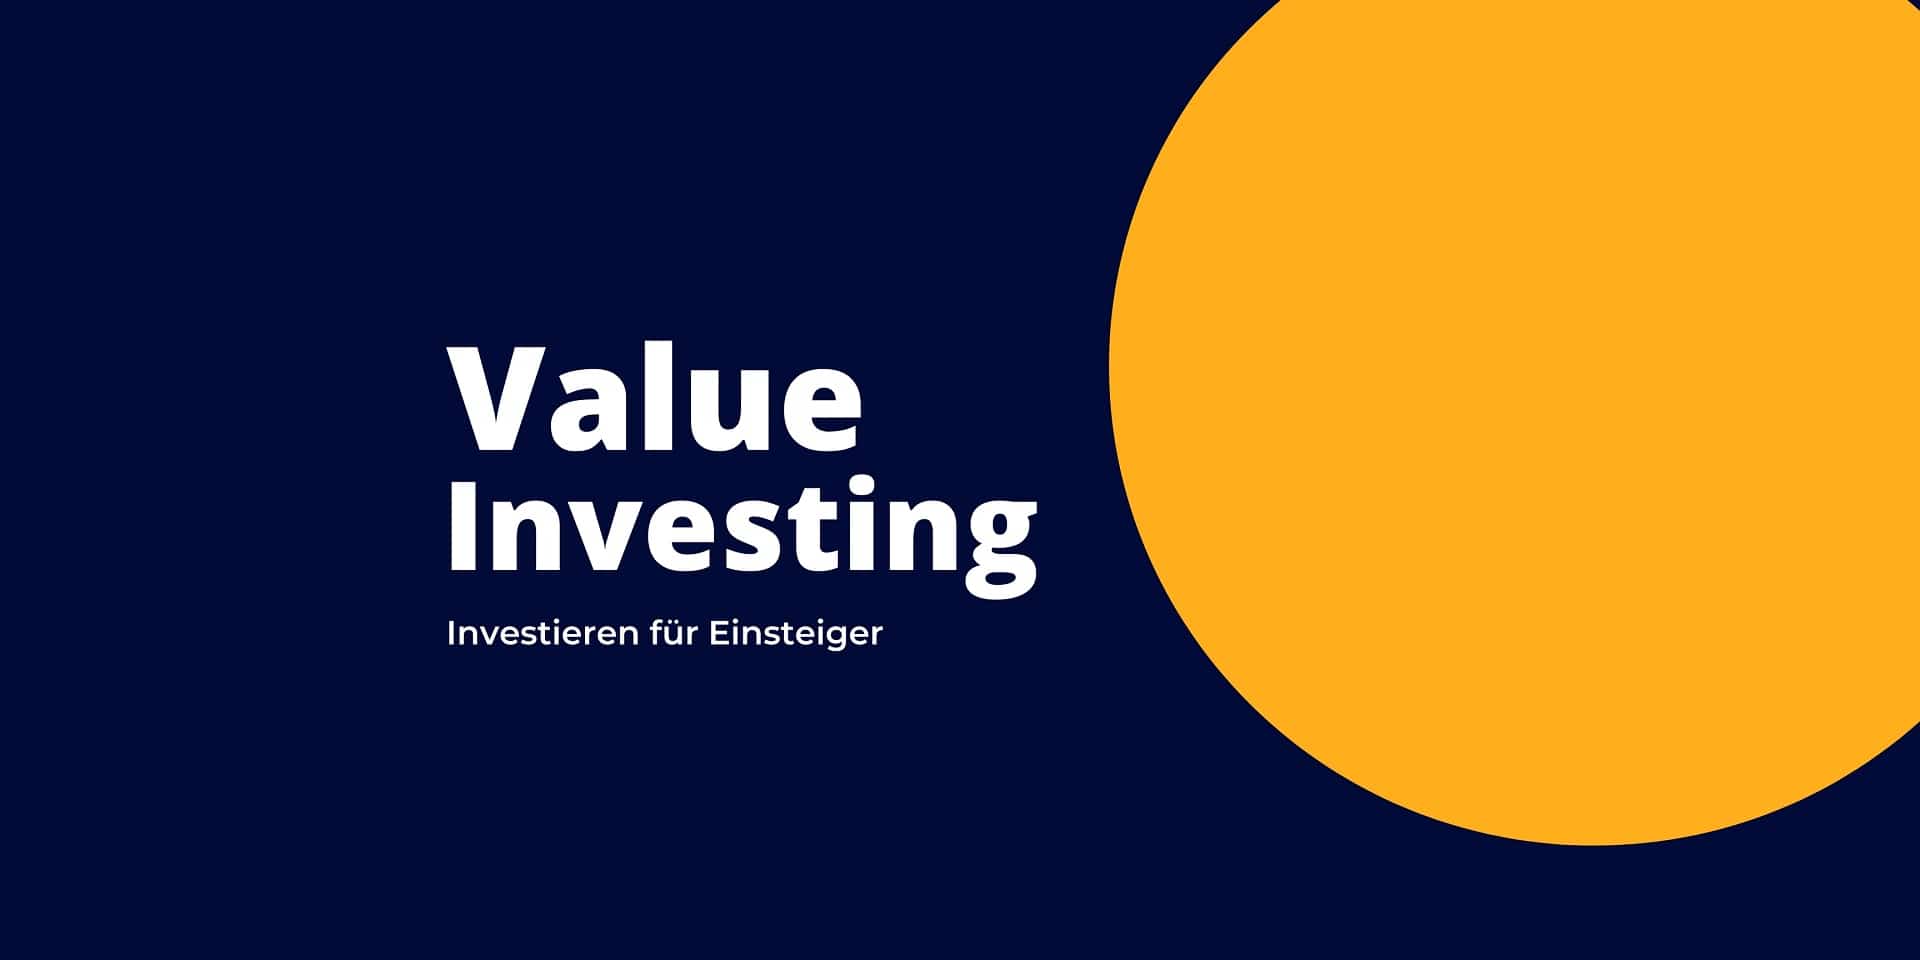 Value Investing für Einsteiger - Tipps vom Guide